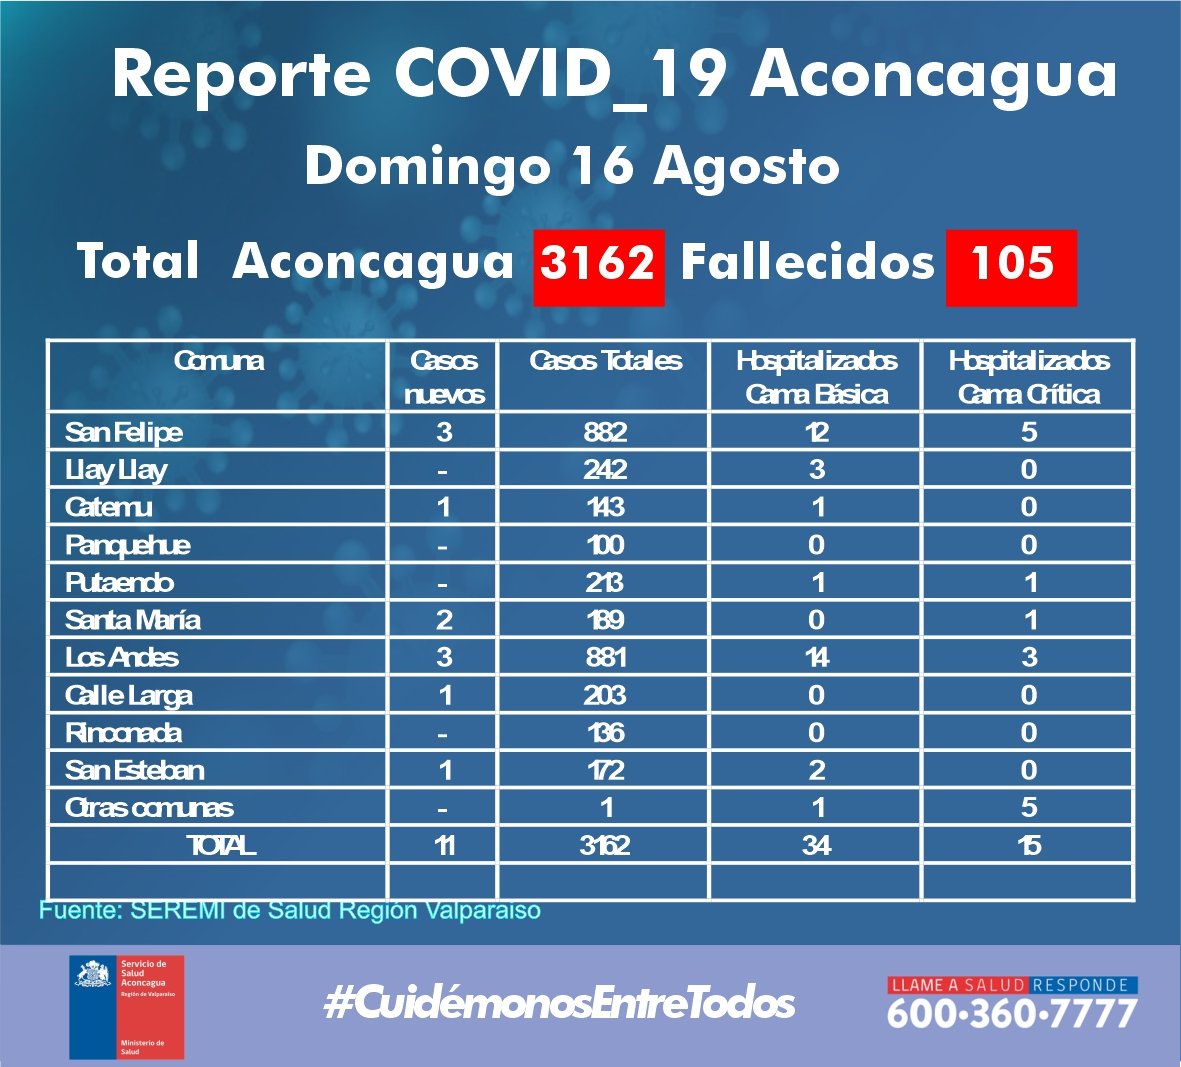 ACONCAGUA: Autoridades de salud reportan 105 fallecidos y un total de 3162 personas afectadas por COVID19 durante lo que va de pandemia